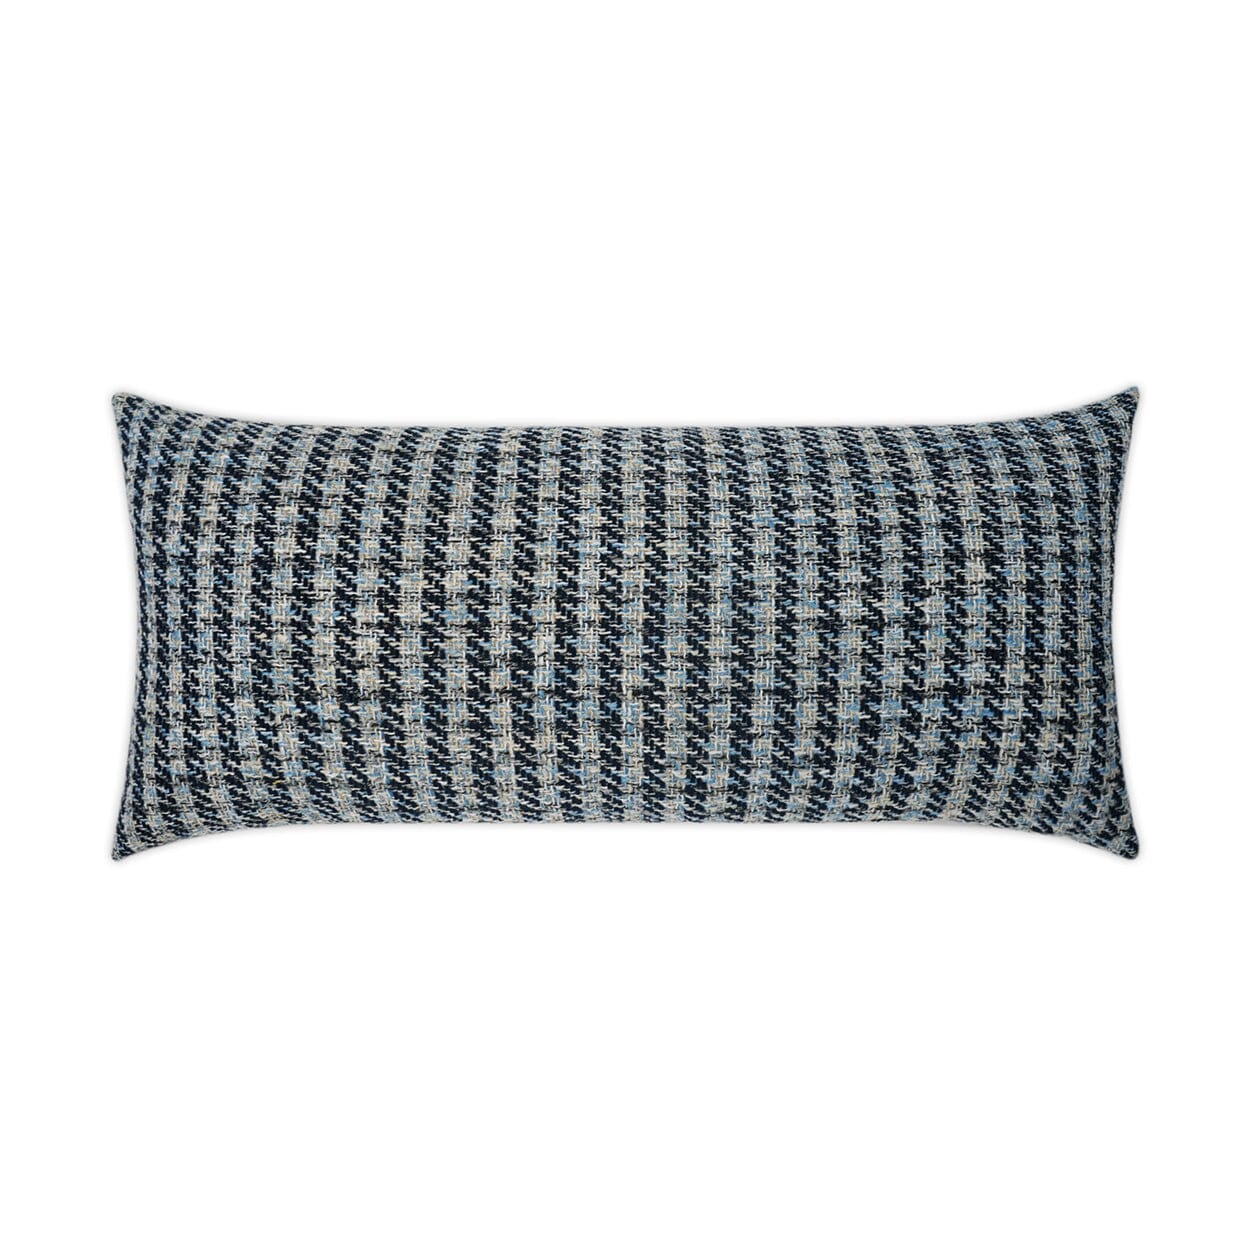 D.V. Kap 12" x 24" Outdoor Lumbar Pillow | Maxim Indigo Pillows D.V Kap Outdoor